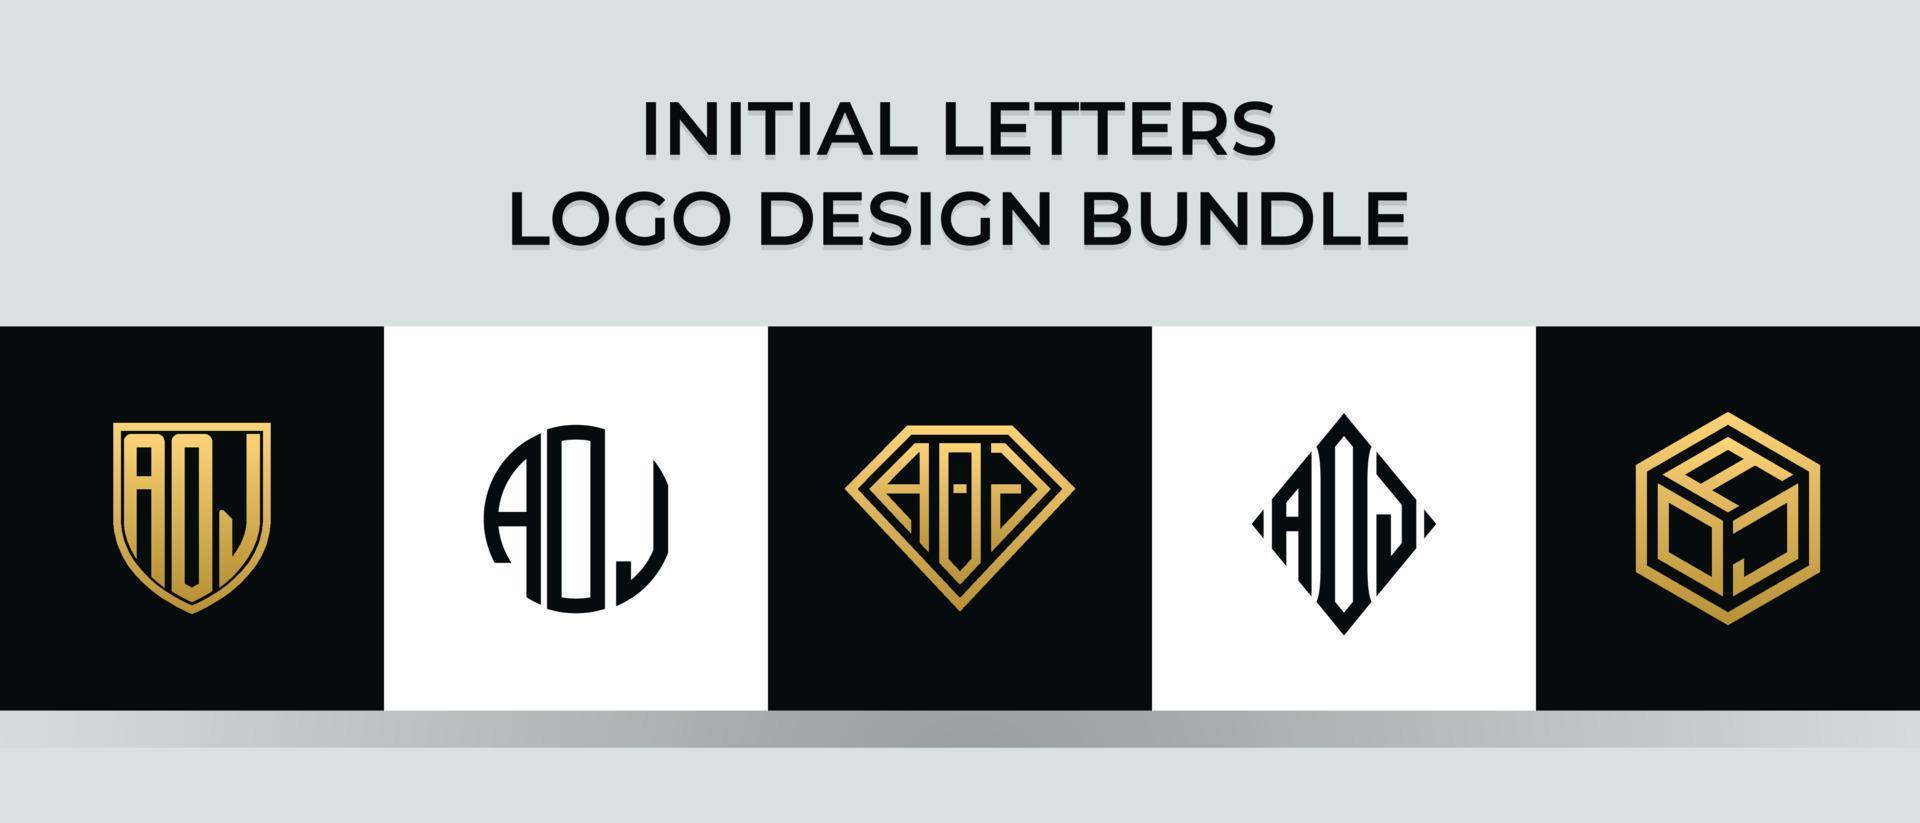 Initial letters AOJ logo designs Bundle vector